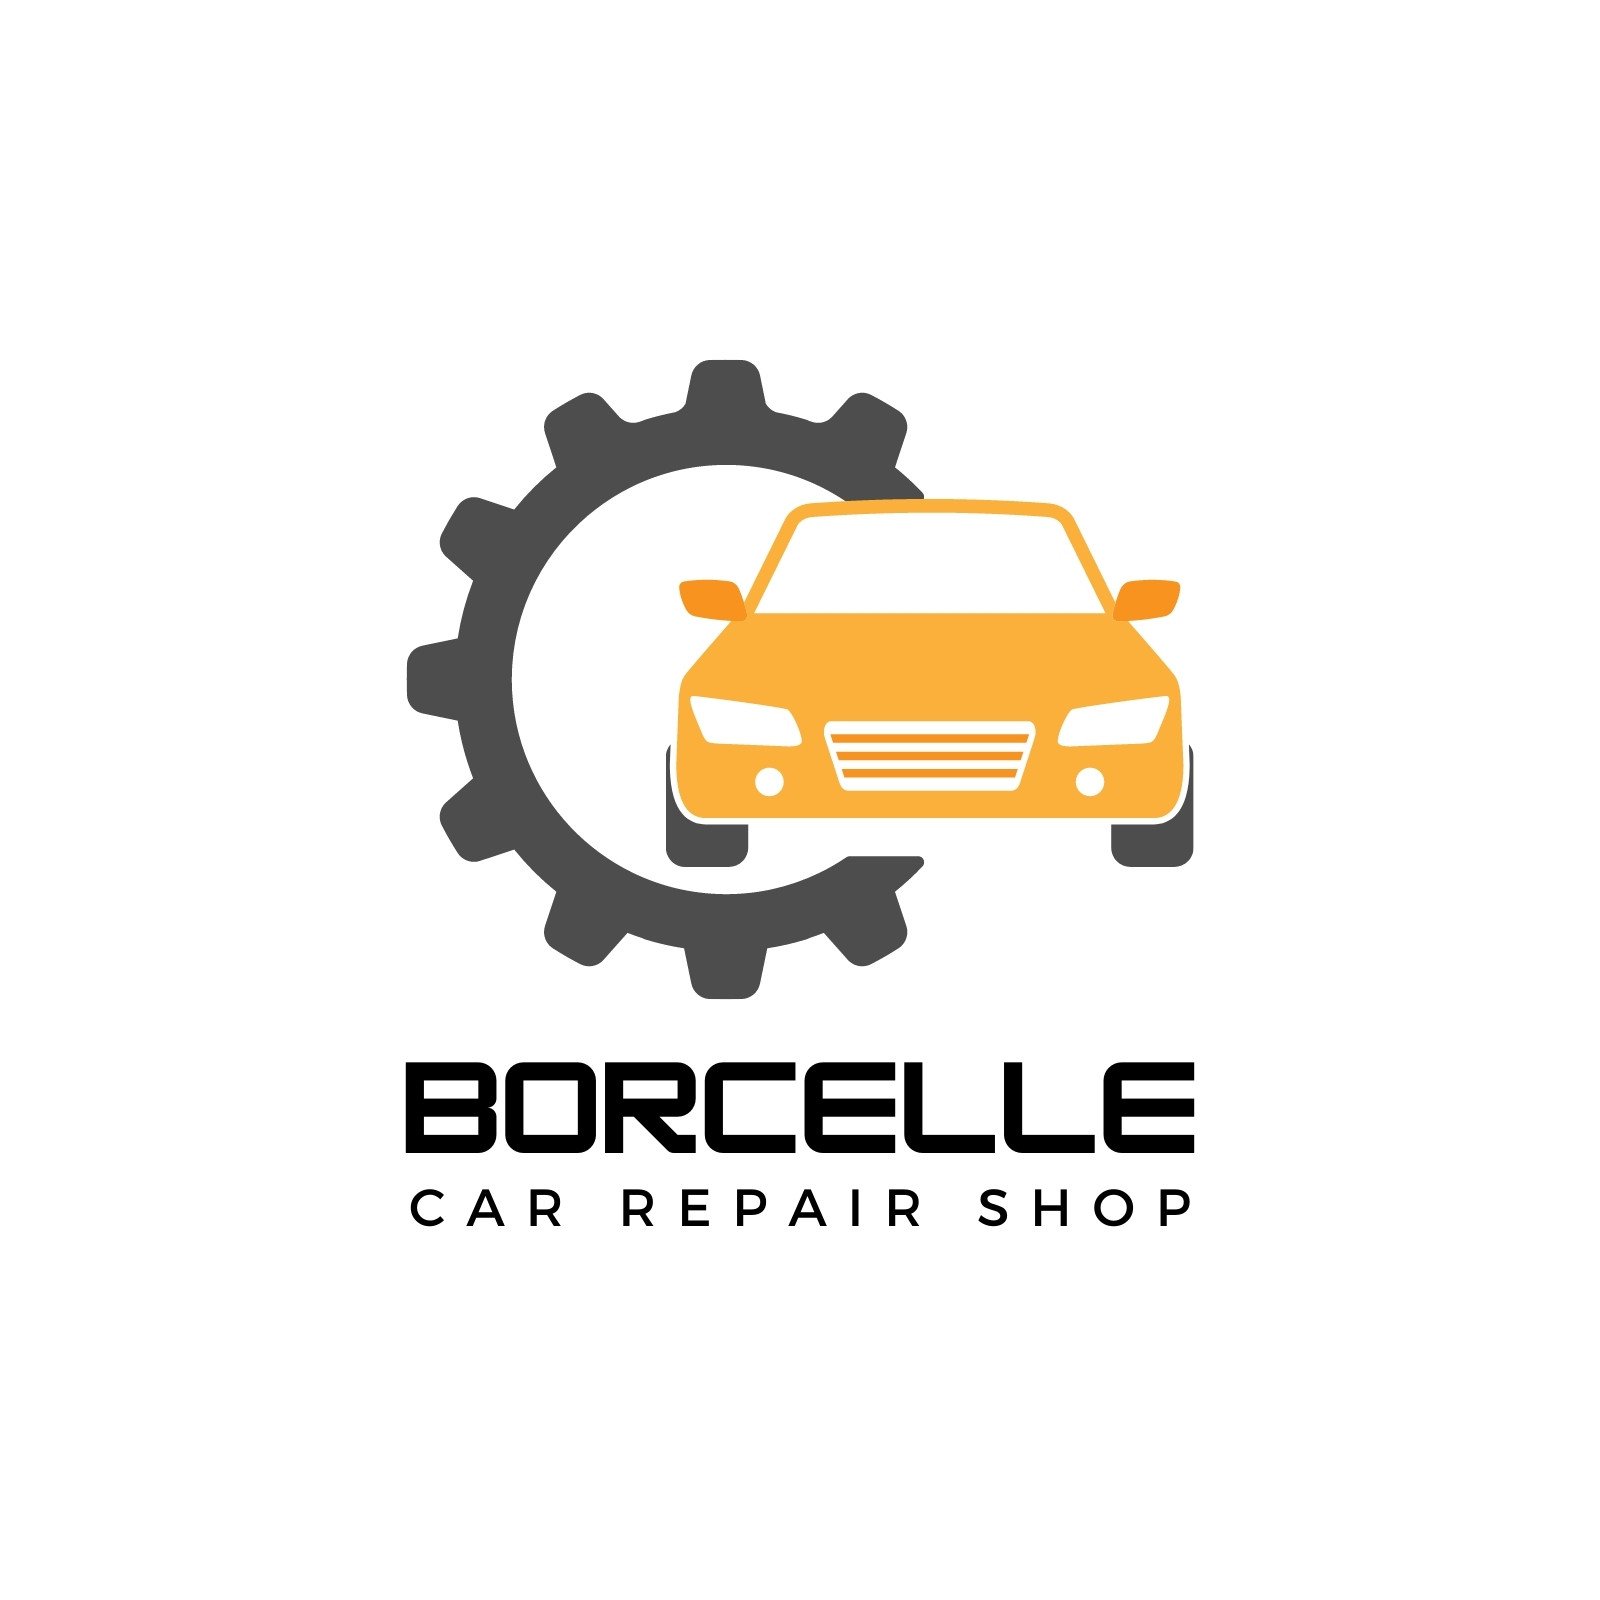 Black and Orange Simple Car Repair Shop Logo